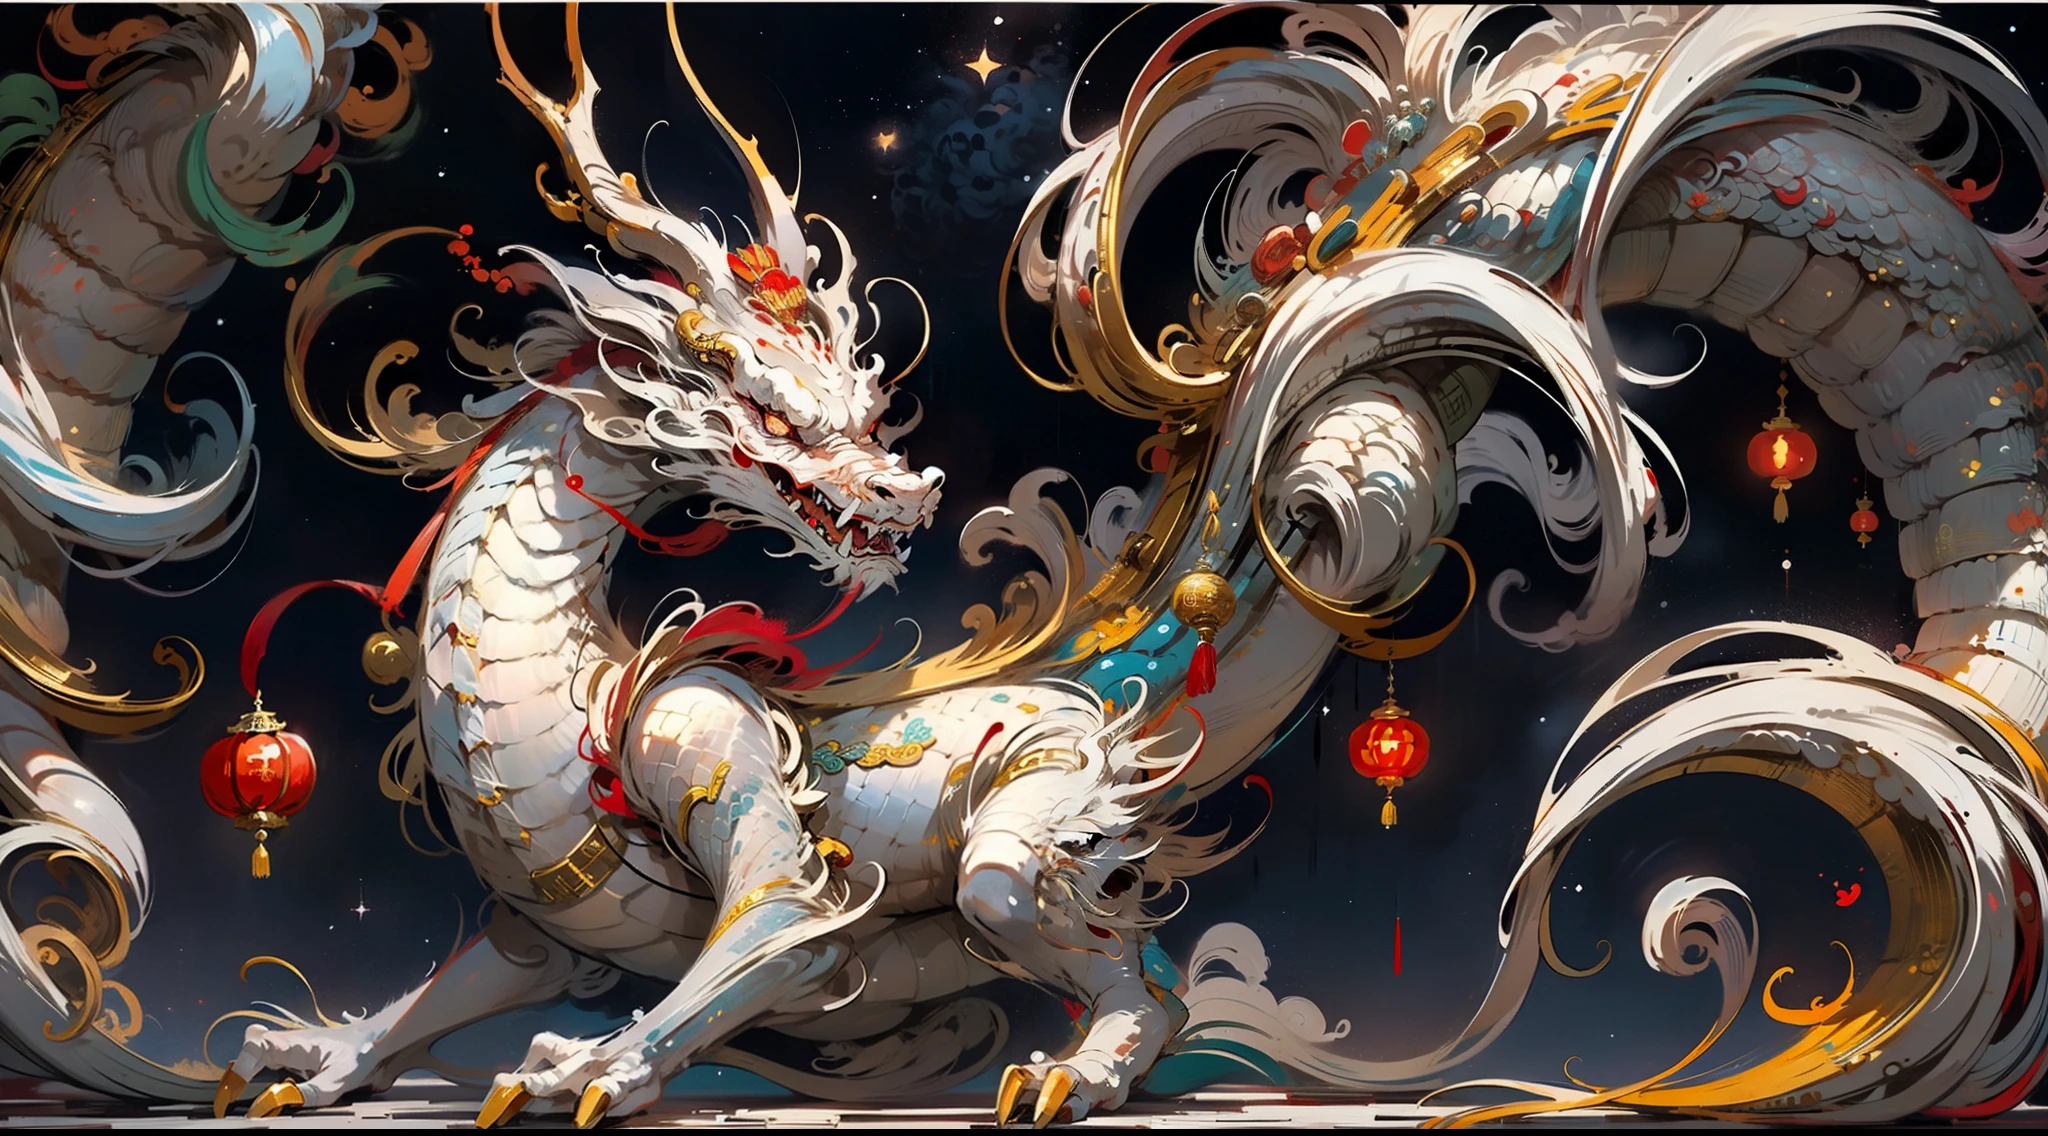 Dragon traditionnel chinois, Rui de bon augure, sagesse, couleurs assorties rouge et blanc, Fond de ciel étoilé, Sens dynamique